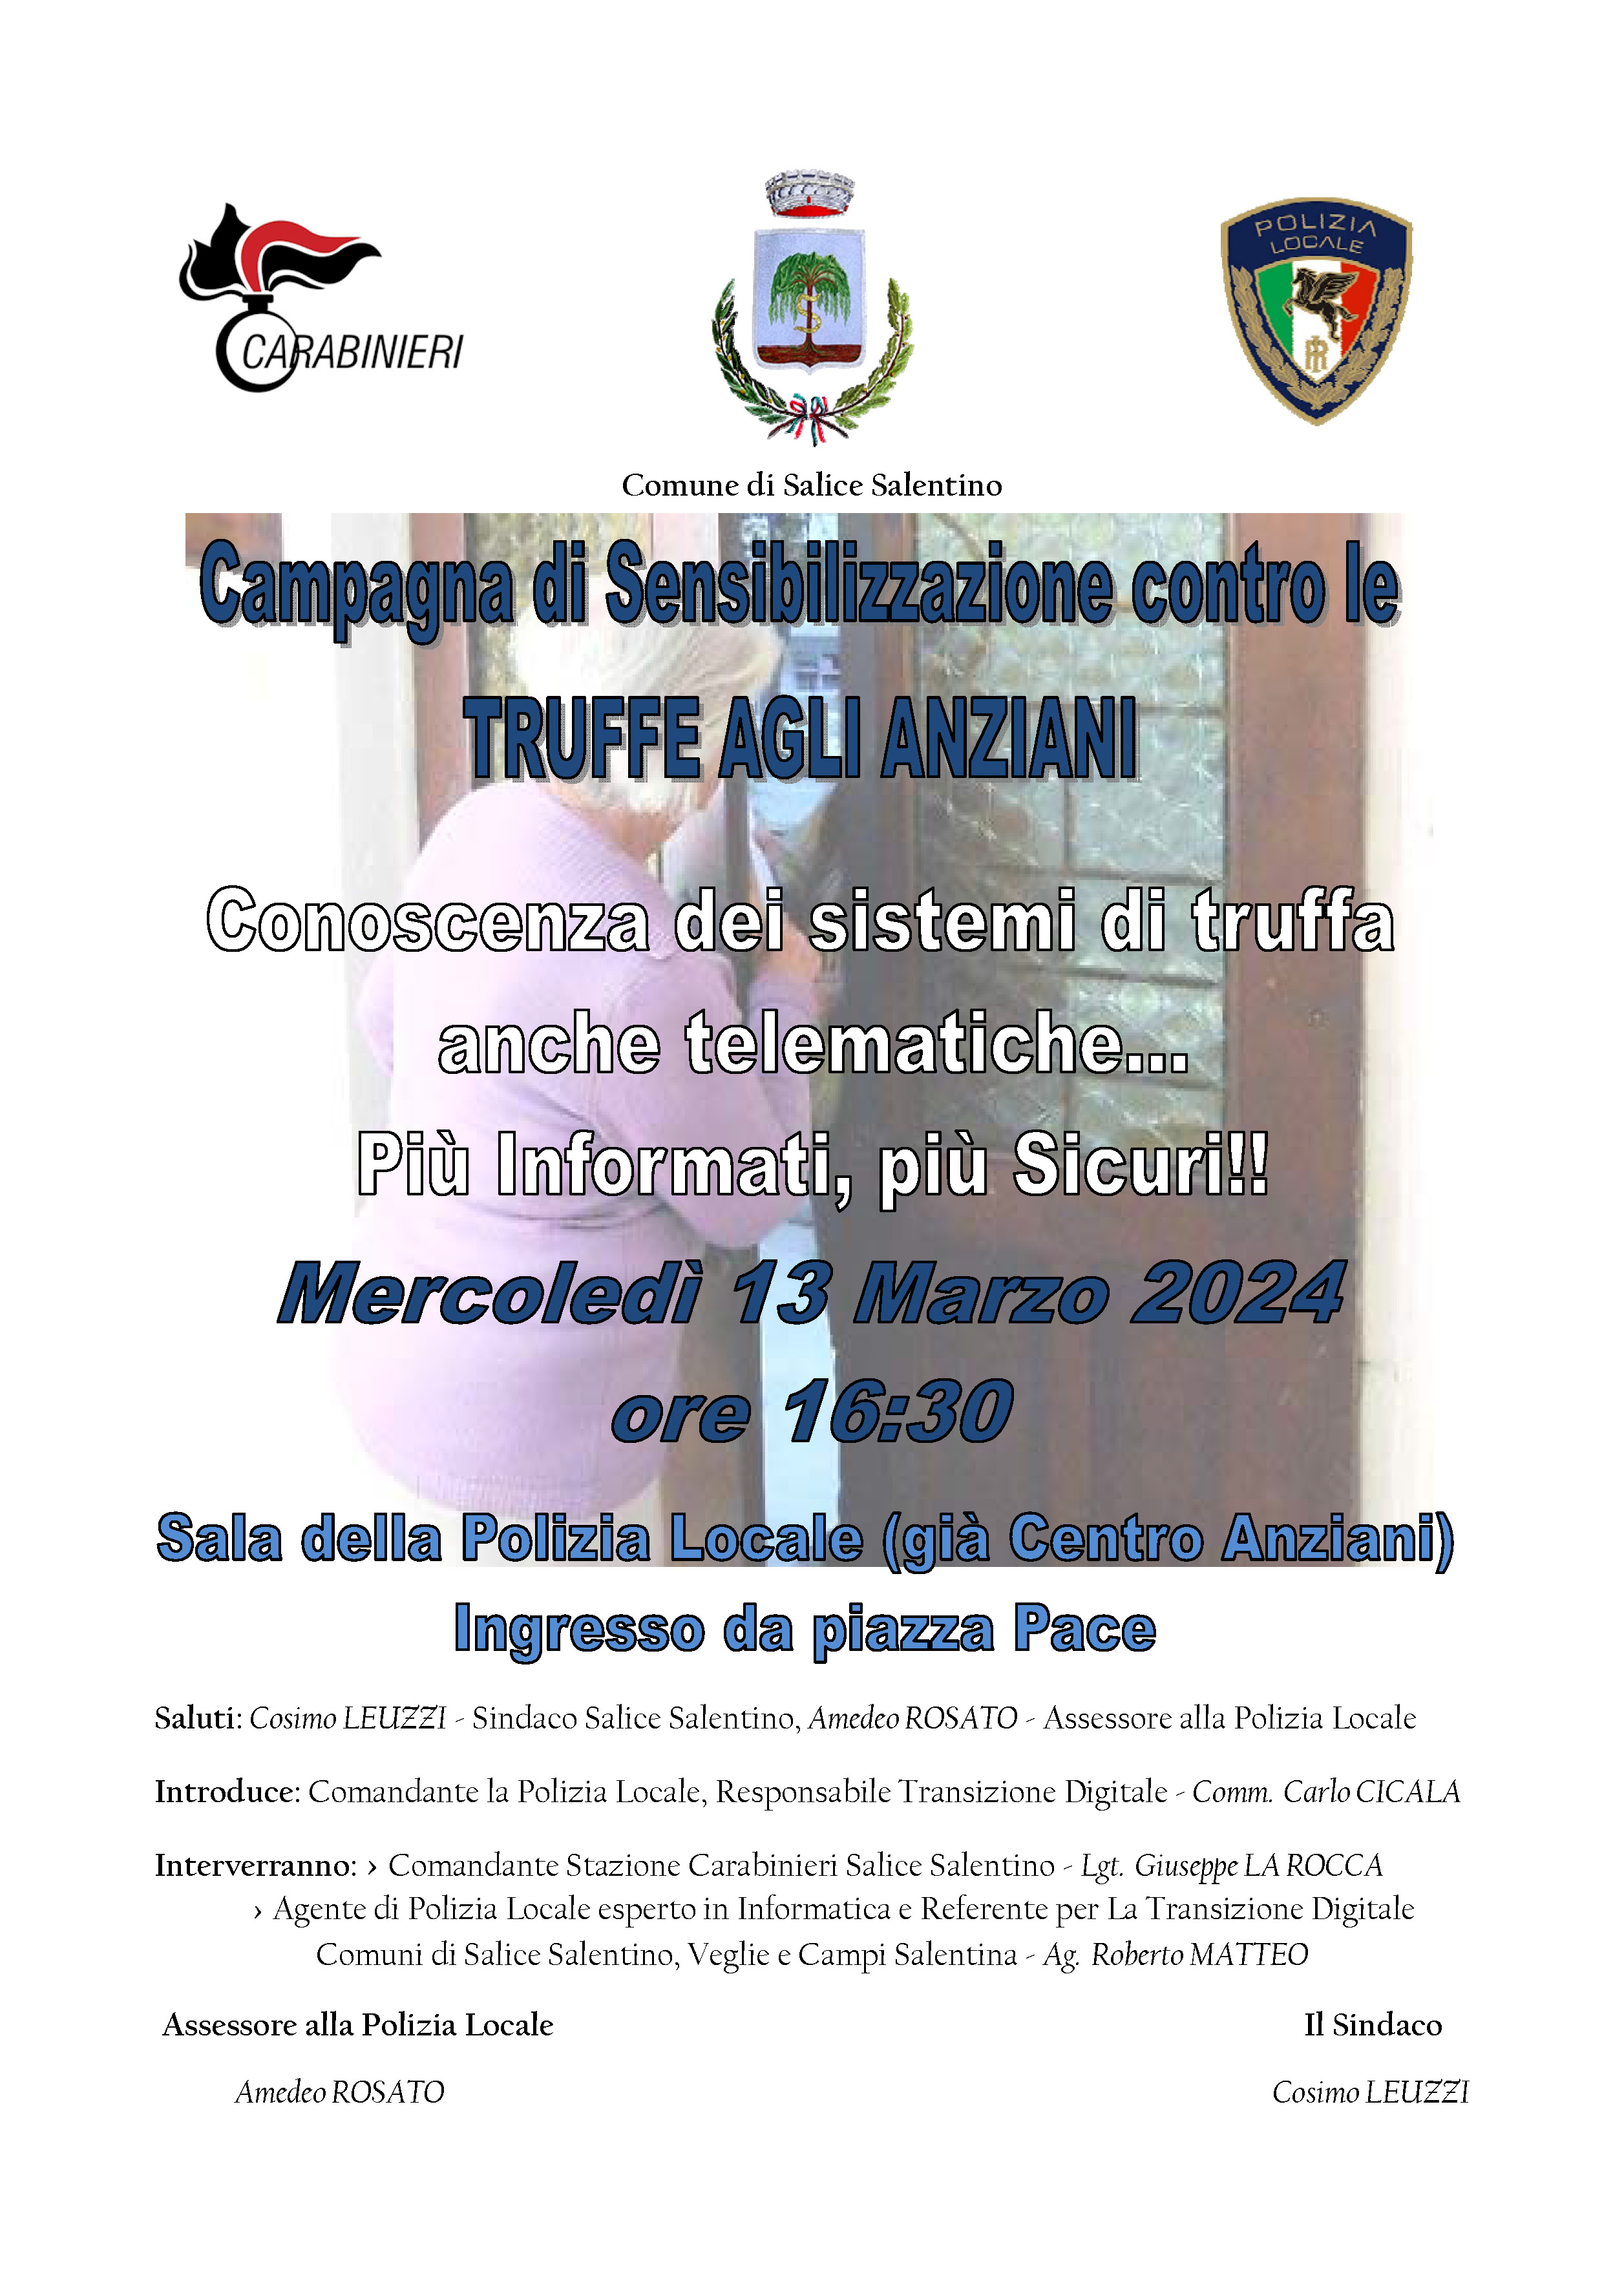 Campagna di Sensibilizzazione contro le TRUFFE AGLI ANZIANI - 13/03/2024 ore 16:30 - Sala della Polizia Locale di Piazza Pace (già Centro Anziani)